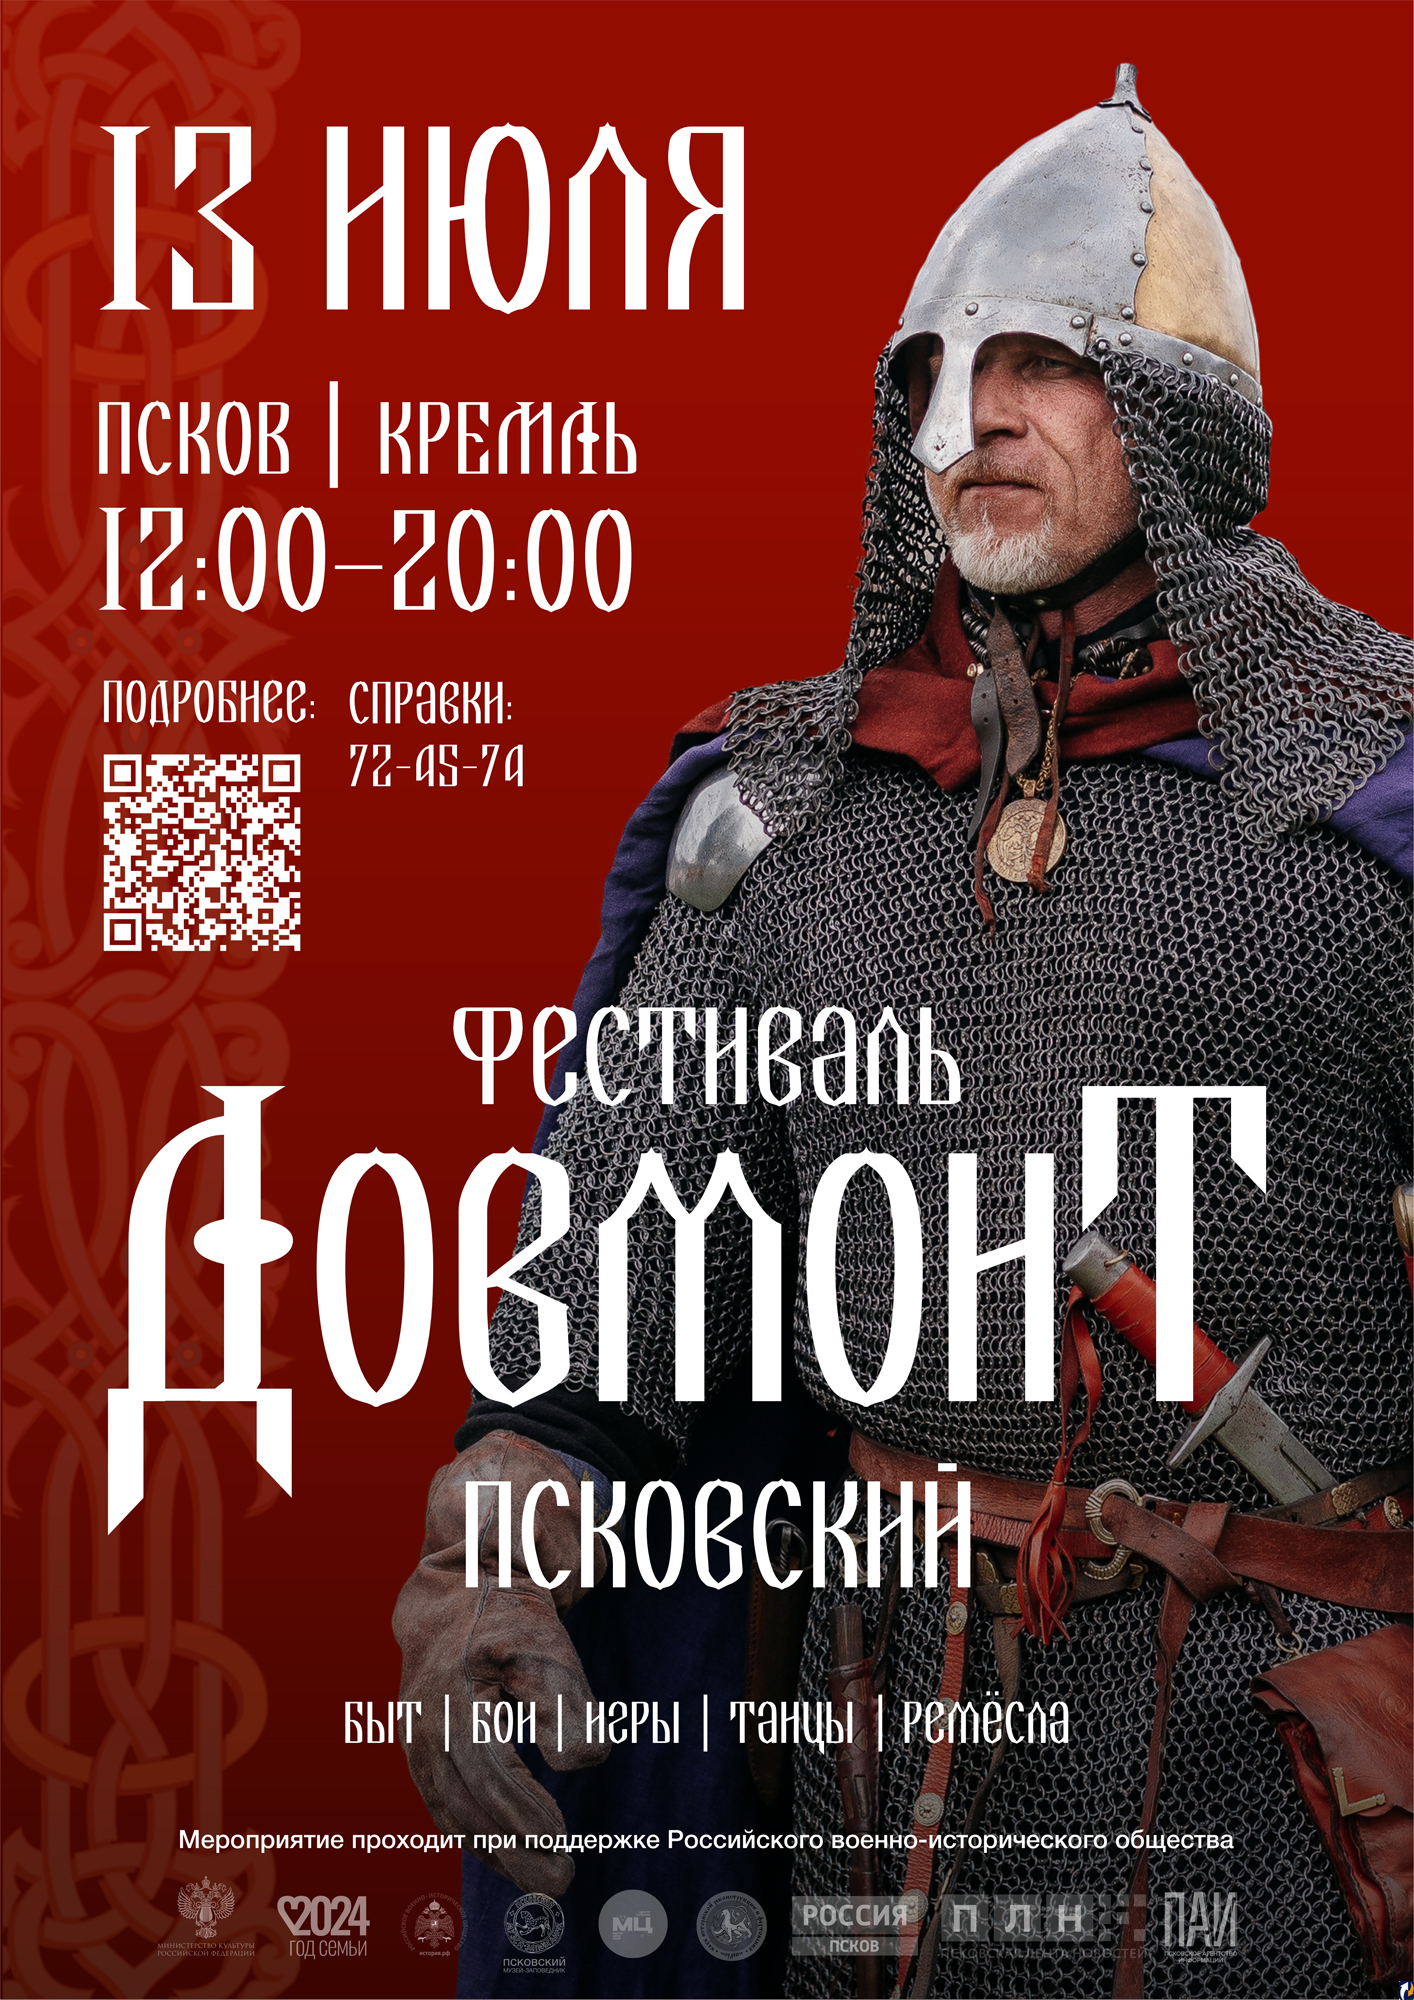 Билеты на фестиваль исторической реконструкции «Довмонт Псковский» ещё есть в продаже